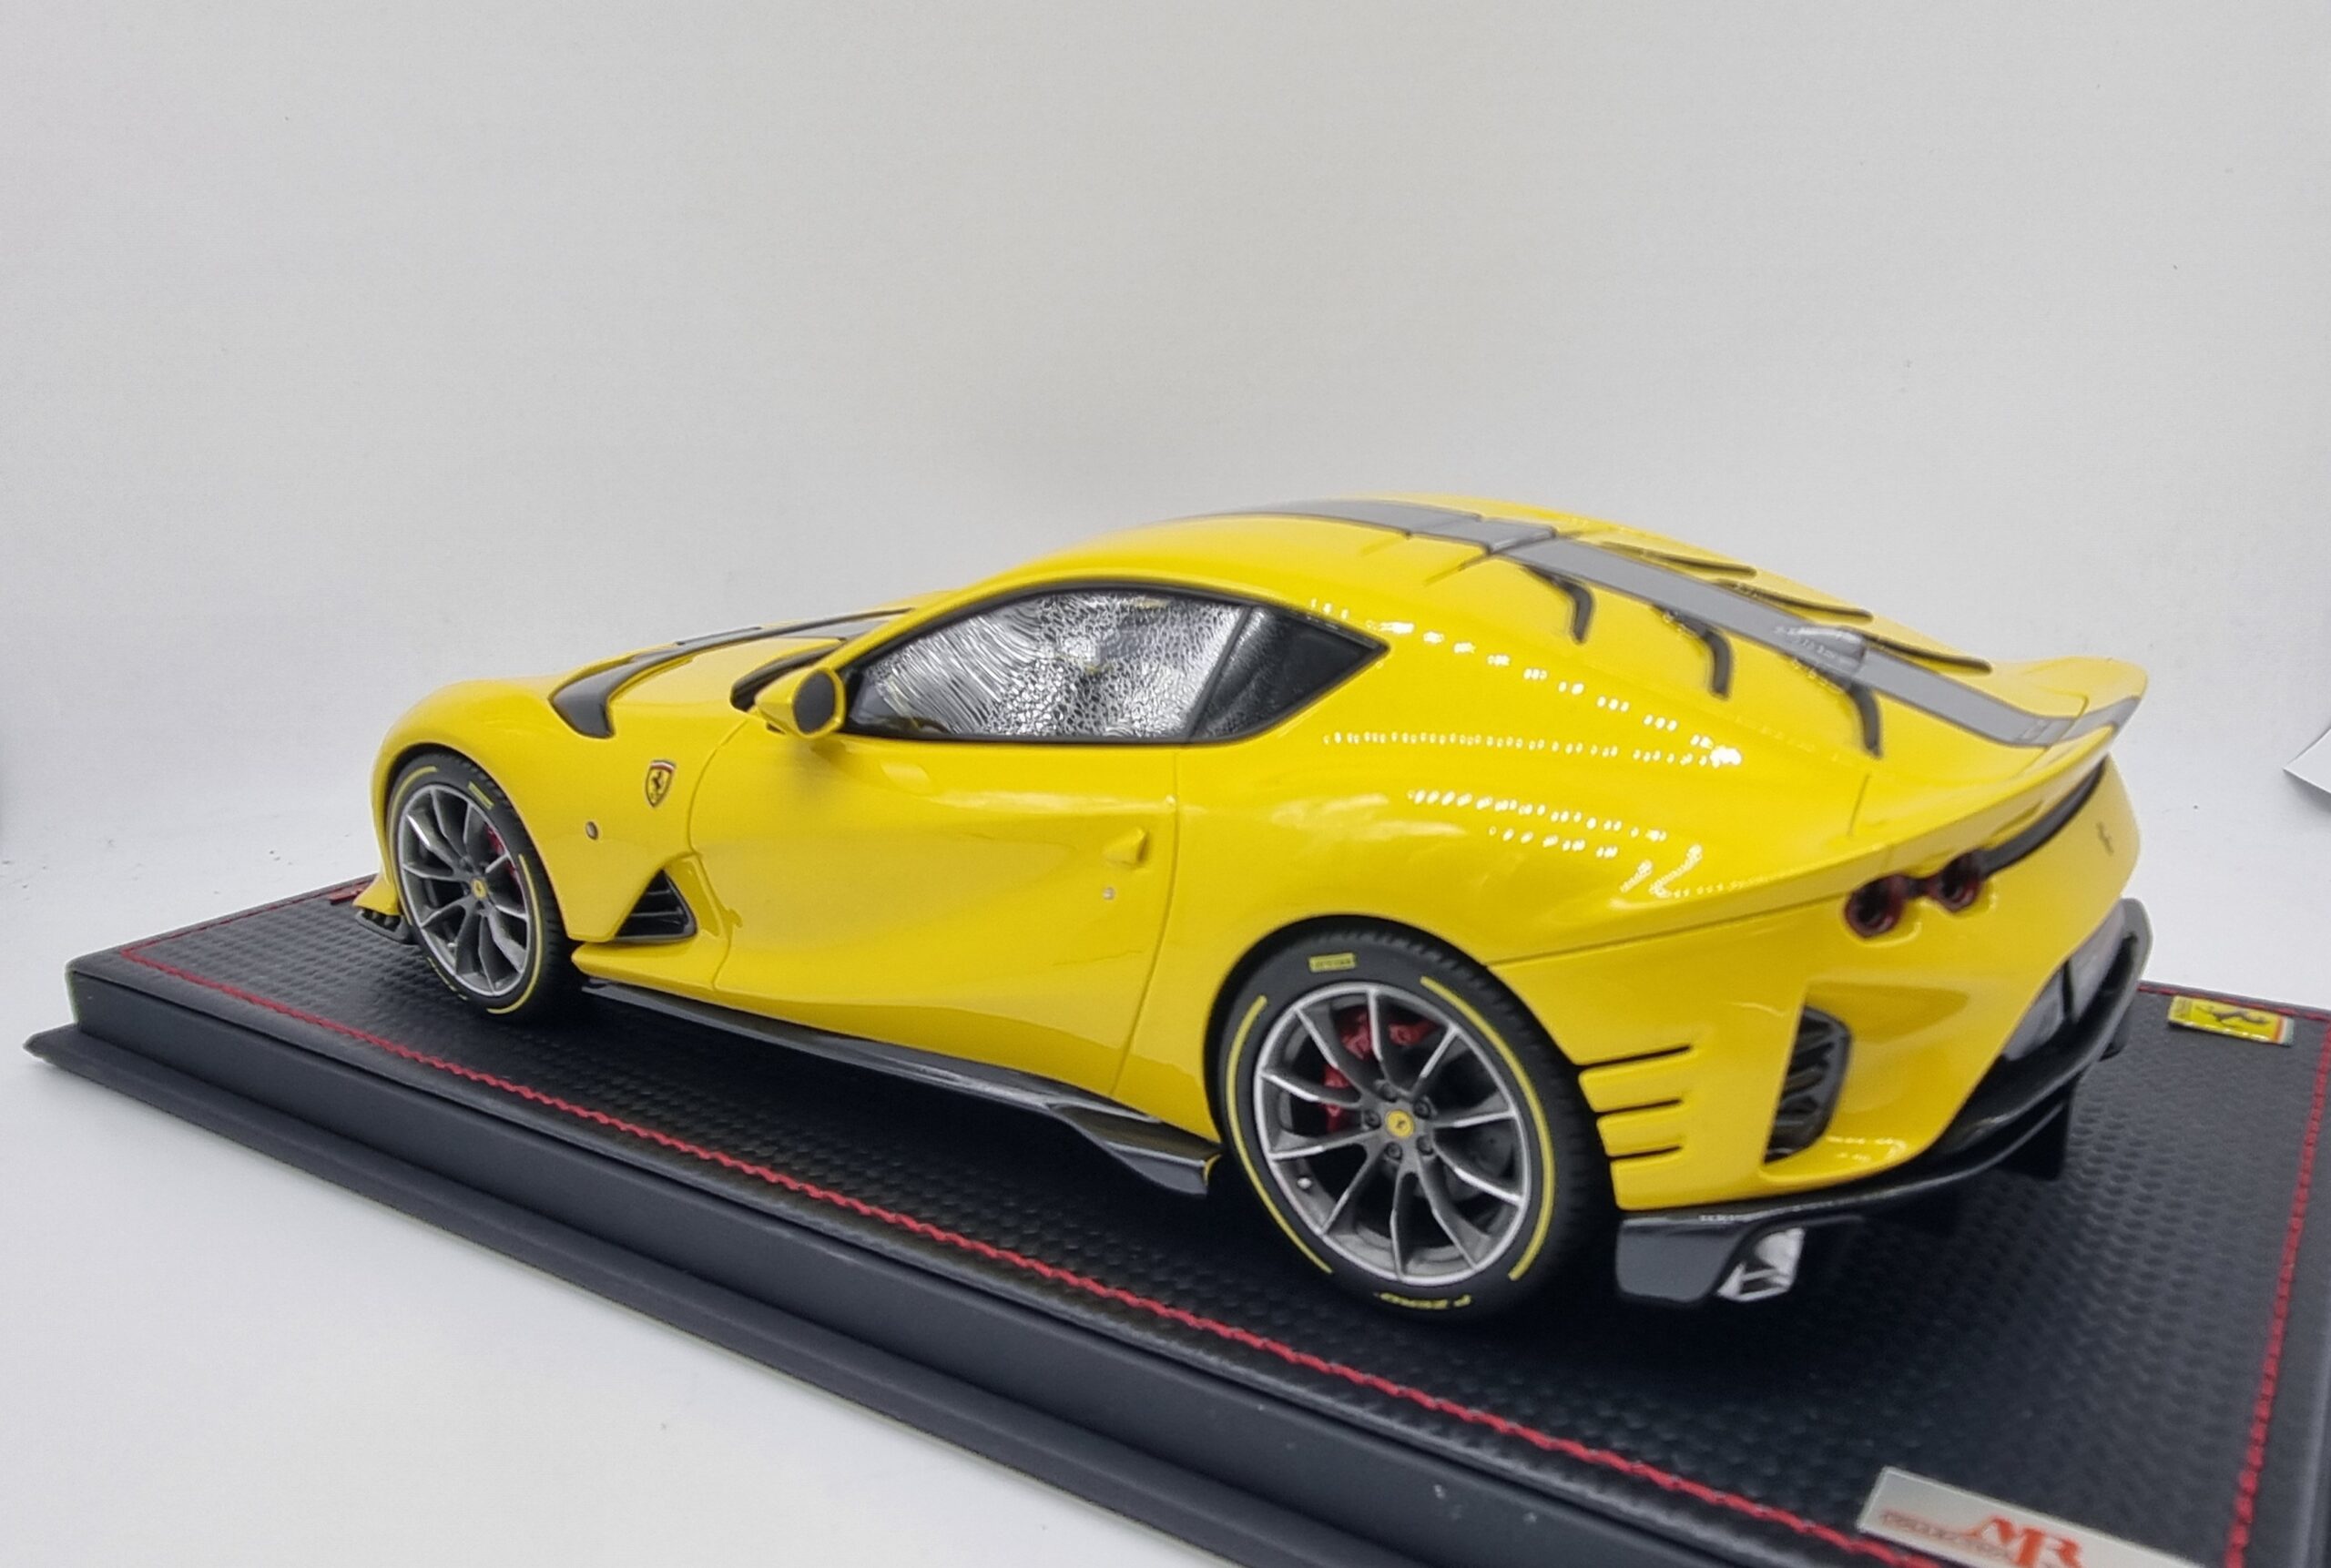 MR COLLECTION 1.18 Ferrari 812 Competizone Giallo Tristrato yellow with ...